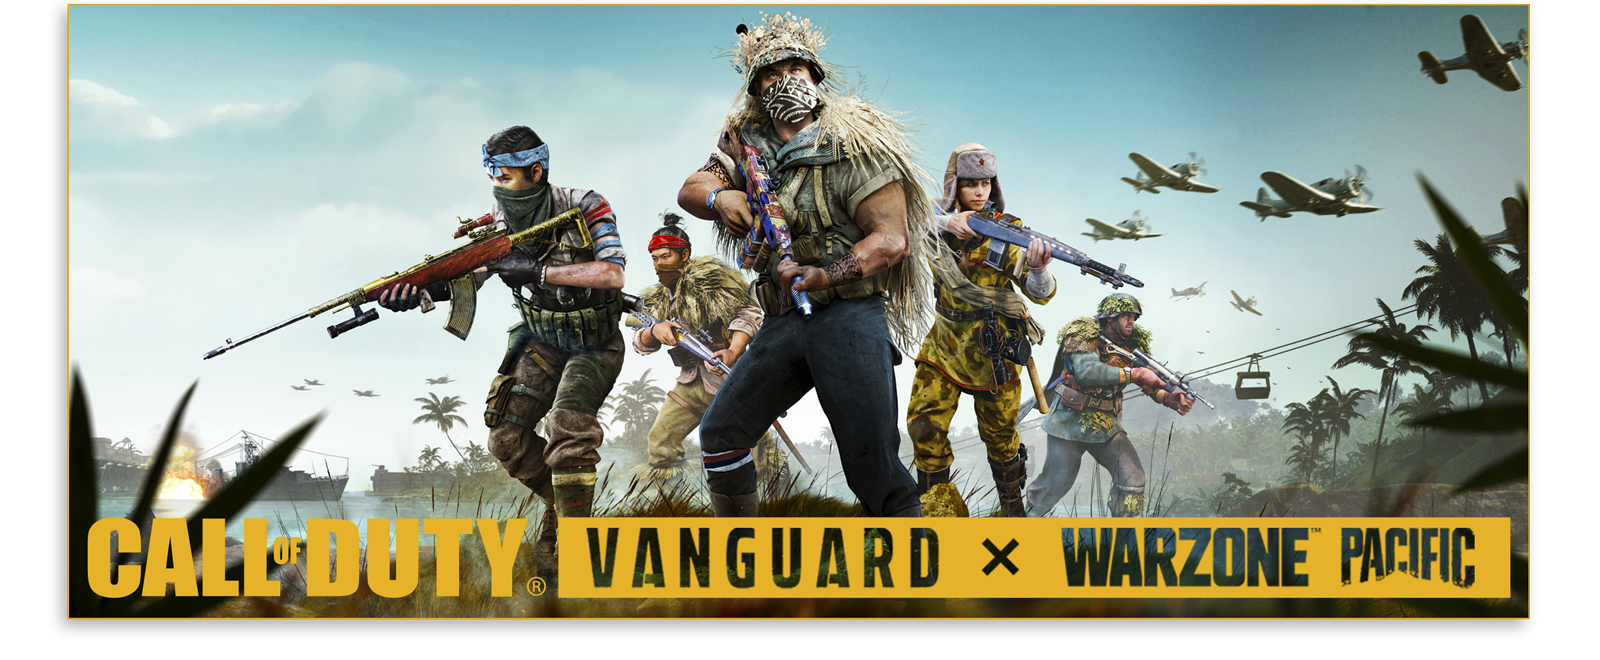 Arte do Passe de Batalha da Temporada 1 de Call of Duty Vanguard e Warzone